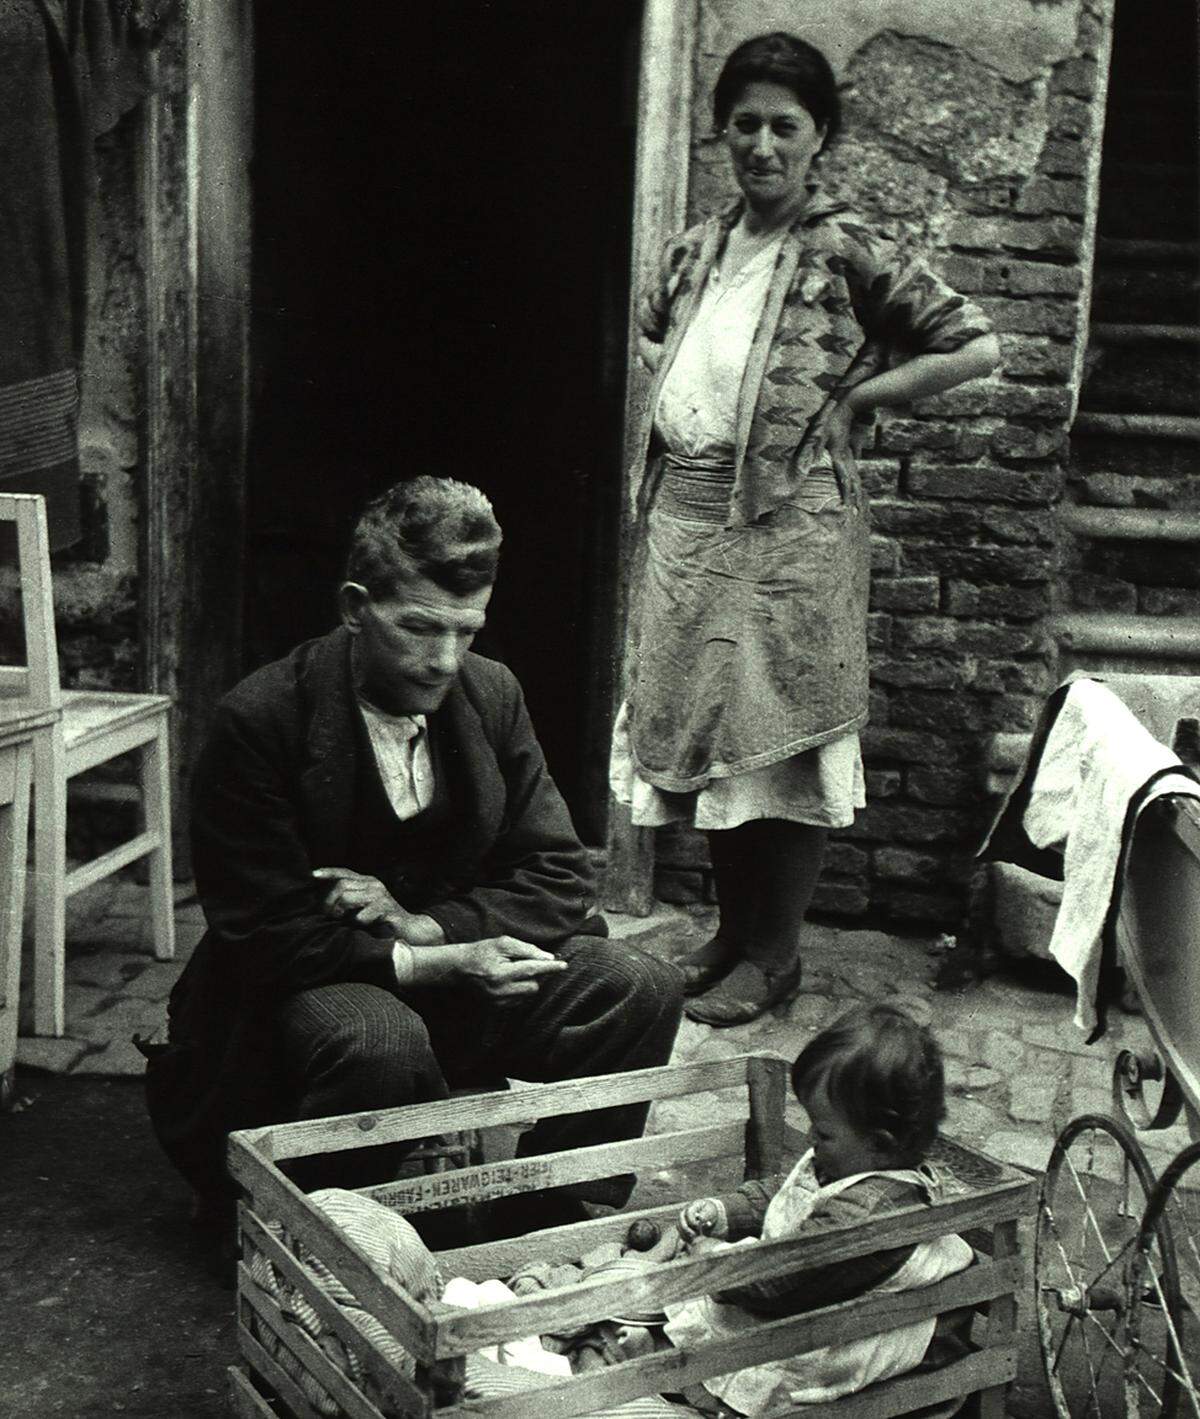 Mit ihren Bildern dokumentierte Tudor-Hart den sozialen Niedergang und die erdrückenden wirtschaftlichen Verhältnisse. Damit hob sie sich deutlich vom Mainstream der britischen Fotografie ab. Edith Tudor-Hart: Arbeitslose Familie, Wien, 1930 (c) Wien Museum